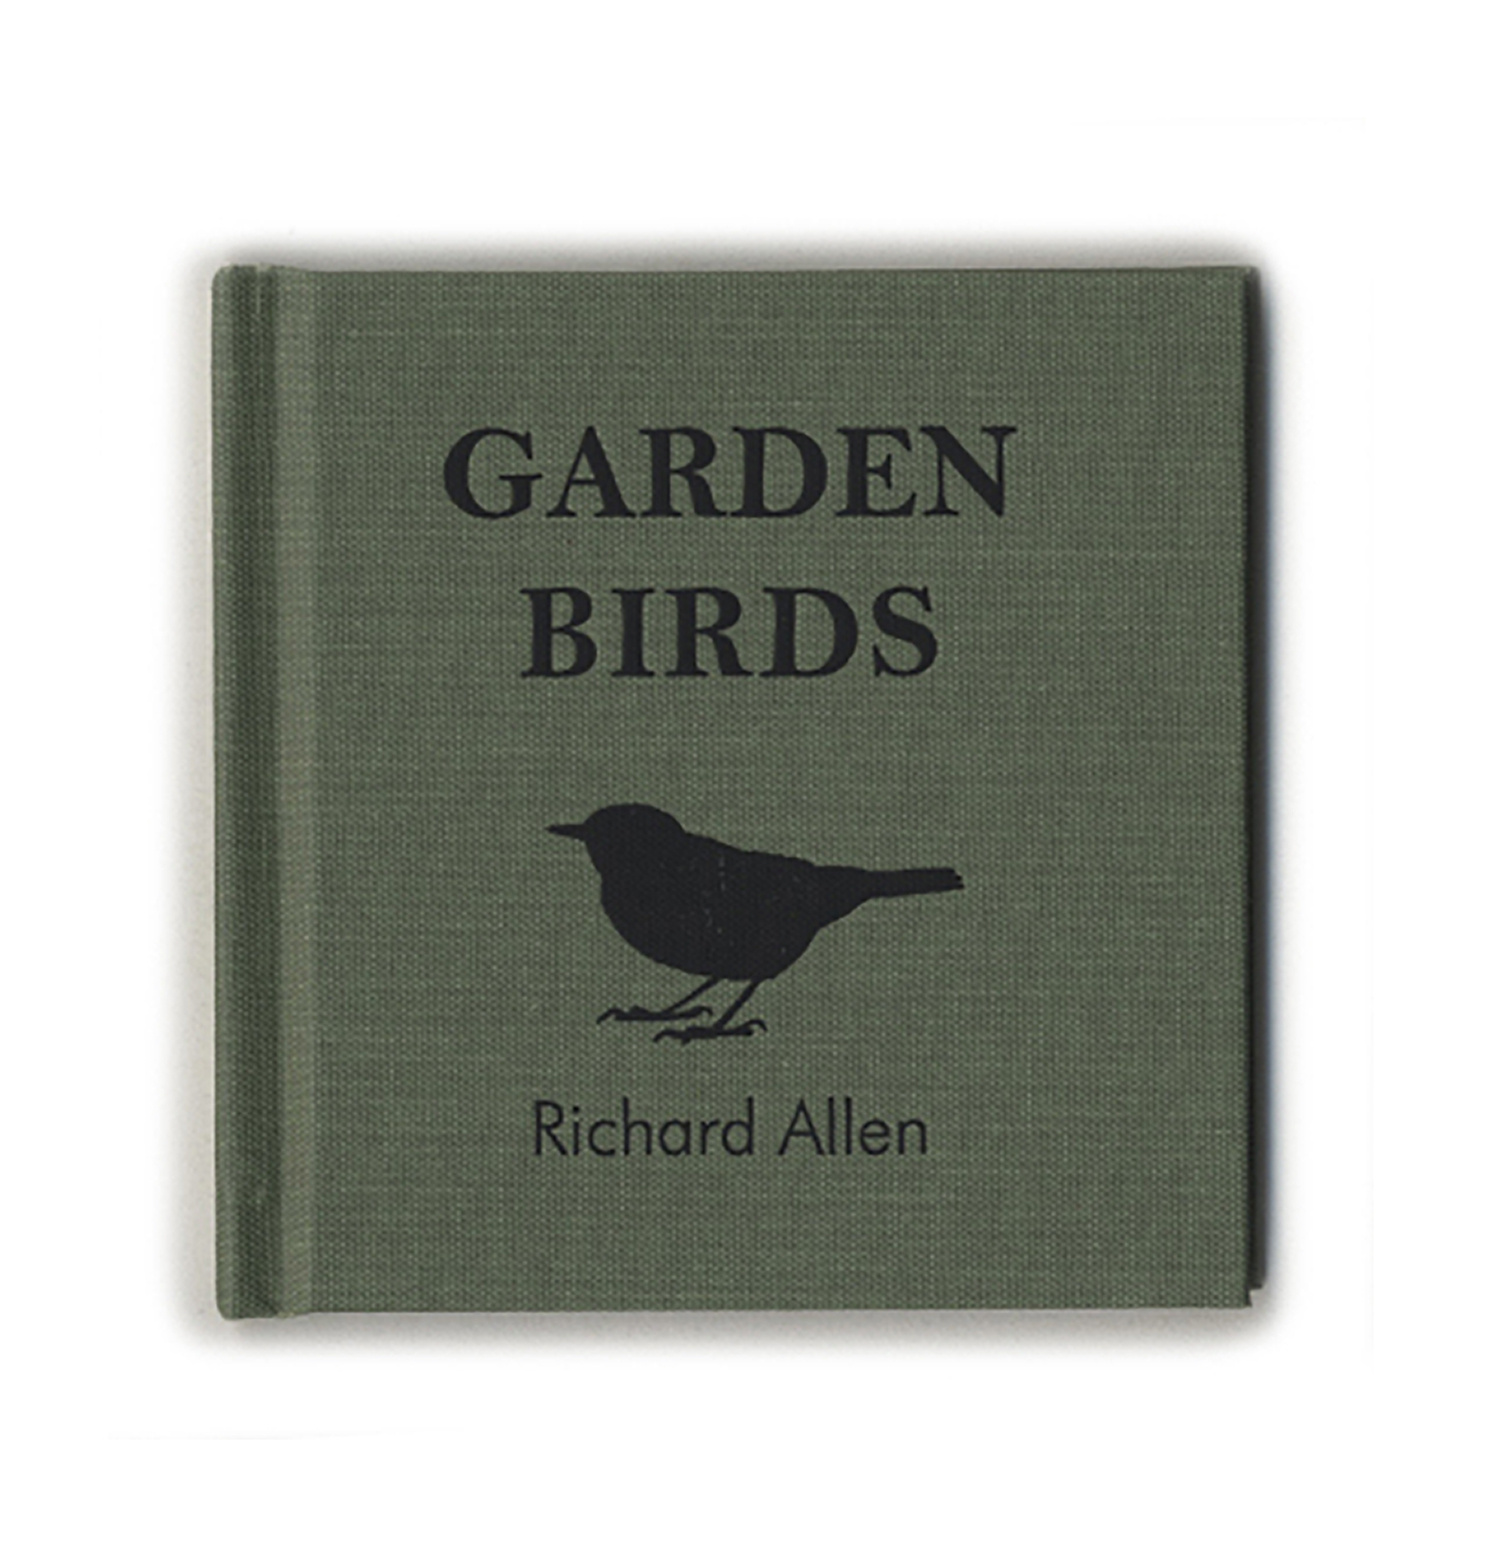 Garden Birds by Richard Allen